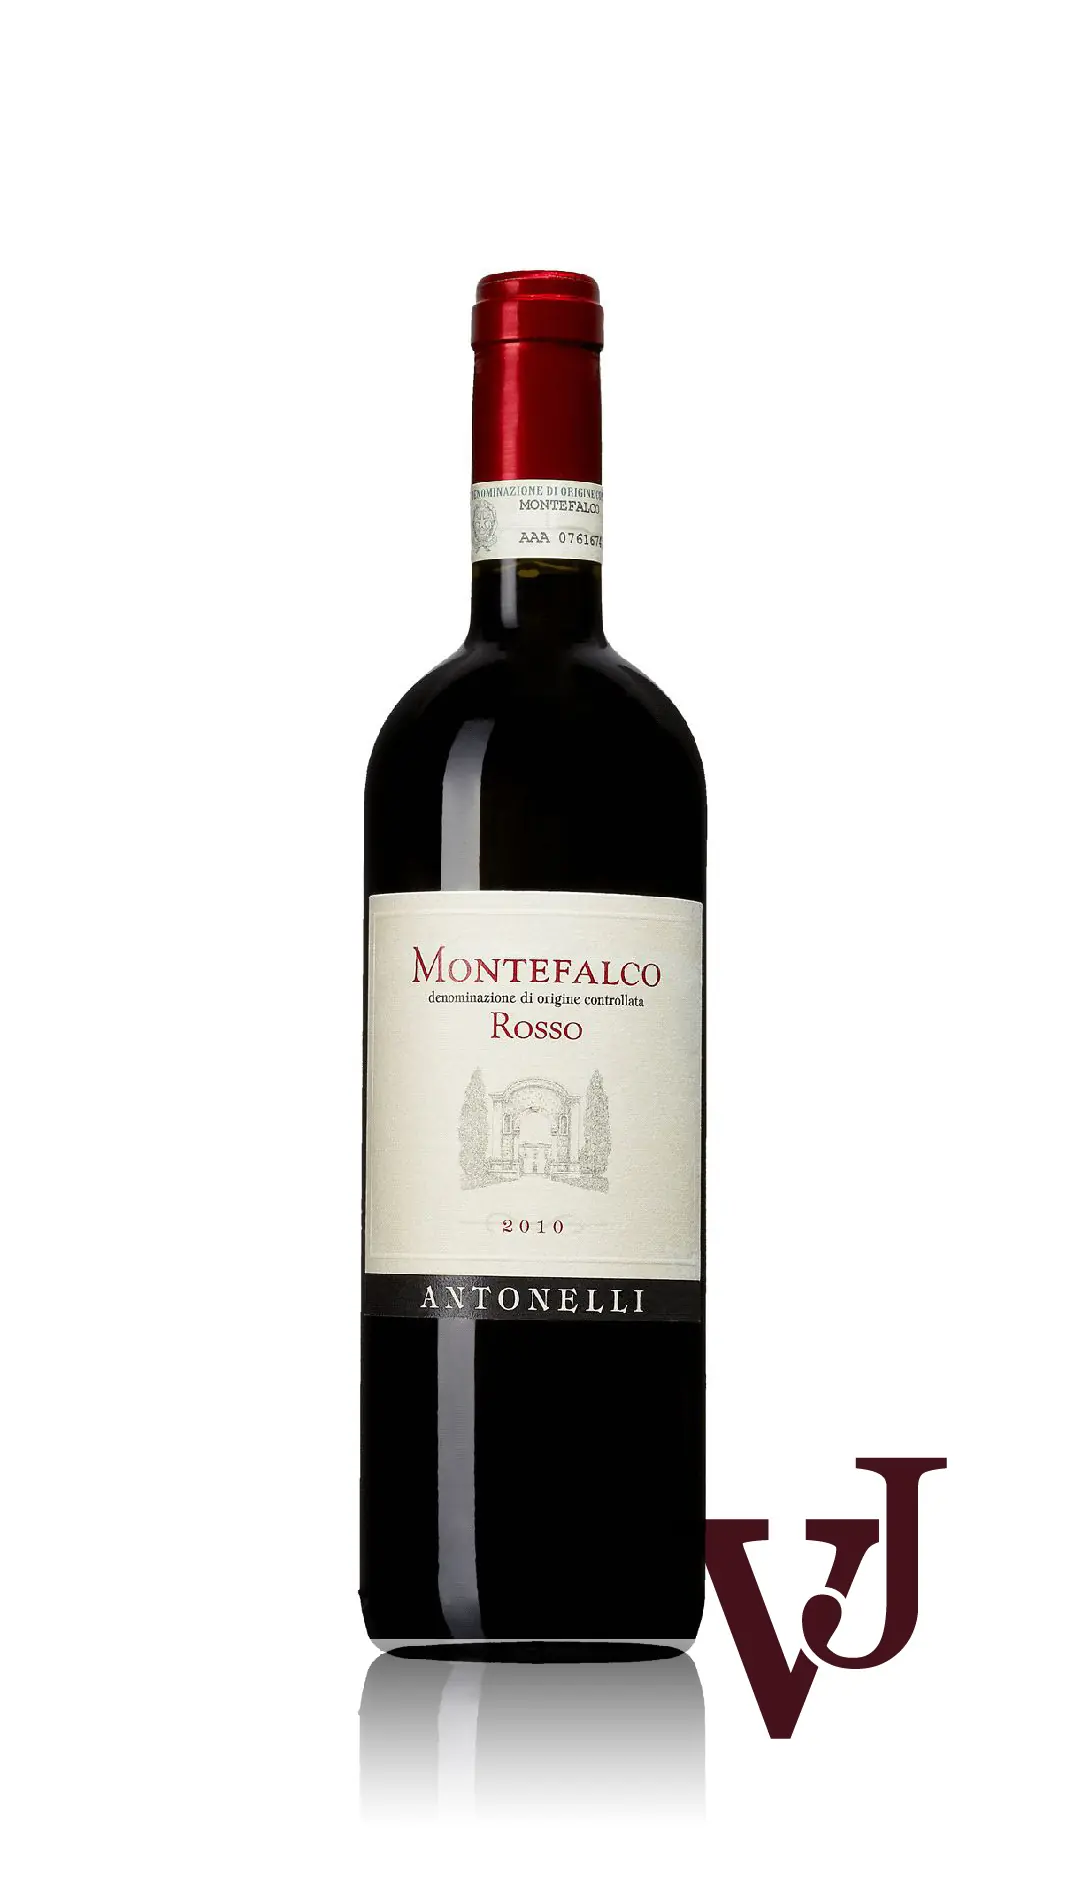 Rött Vin - Montefalco Rosso Antonelli artikel nummer 231601 från producenten Antonelli San Marco från området Italien - Vinjournalen.se